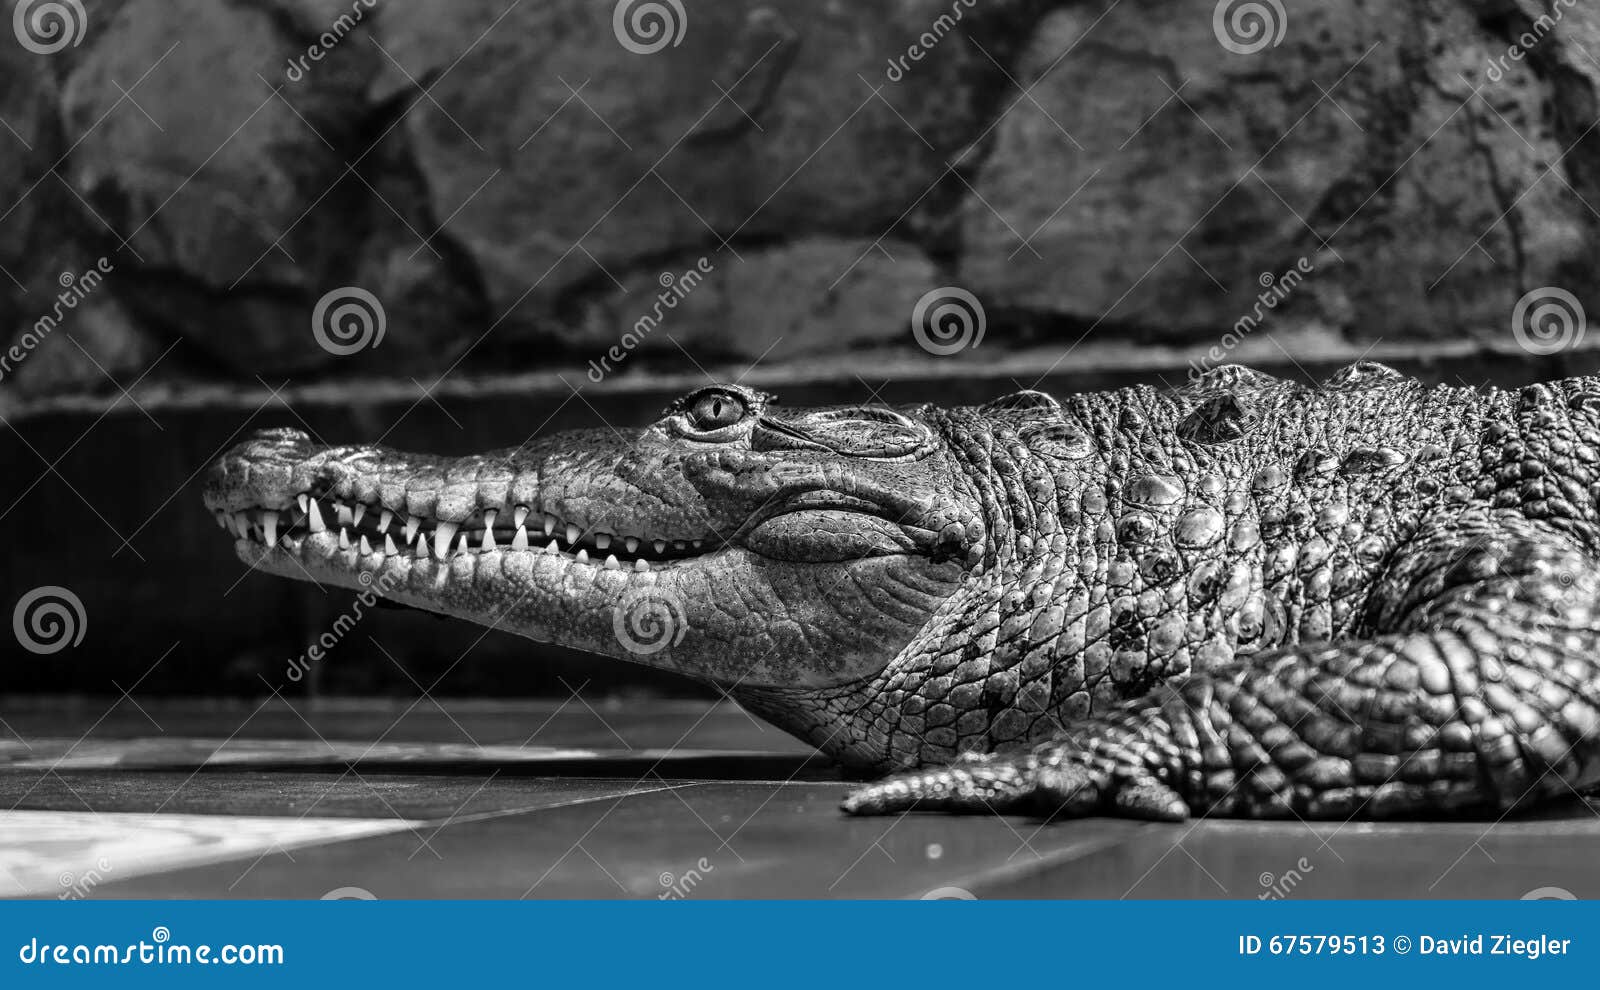 一幅黑白的鳄鱼在水下游泳的画像 库存照片. 图片 包括有 陈列, 爬行动物, 鳄鱼, 破擦声, 题头, 重婚 - 178657146